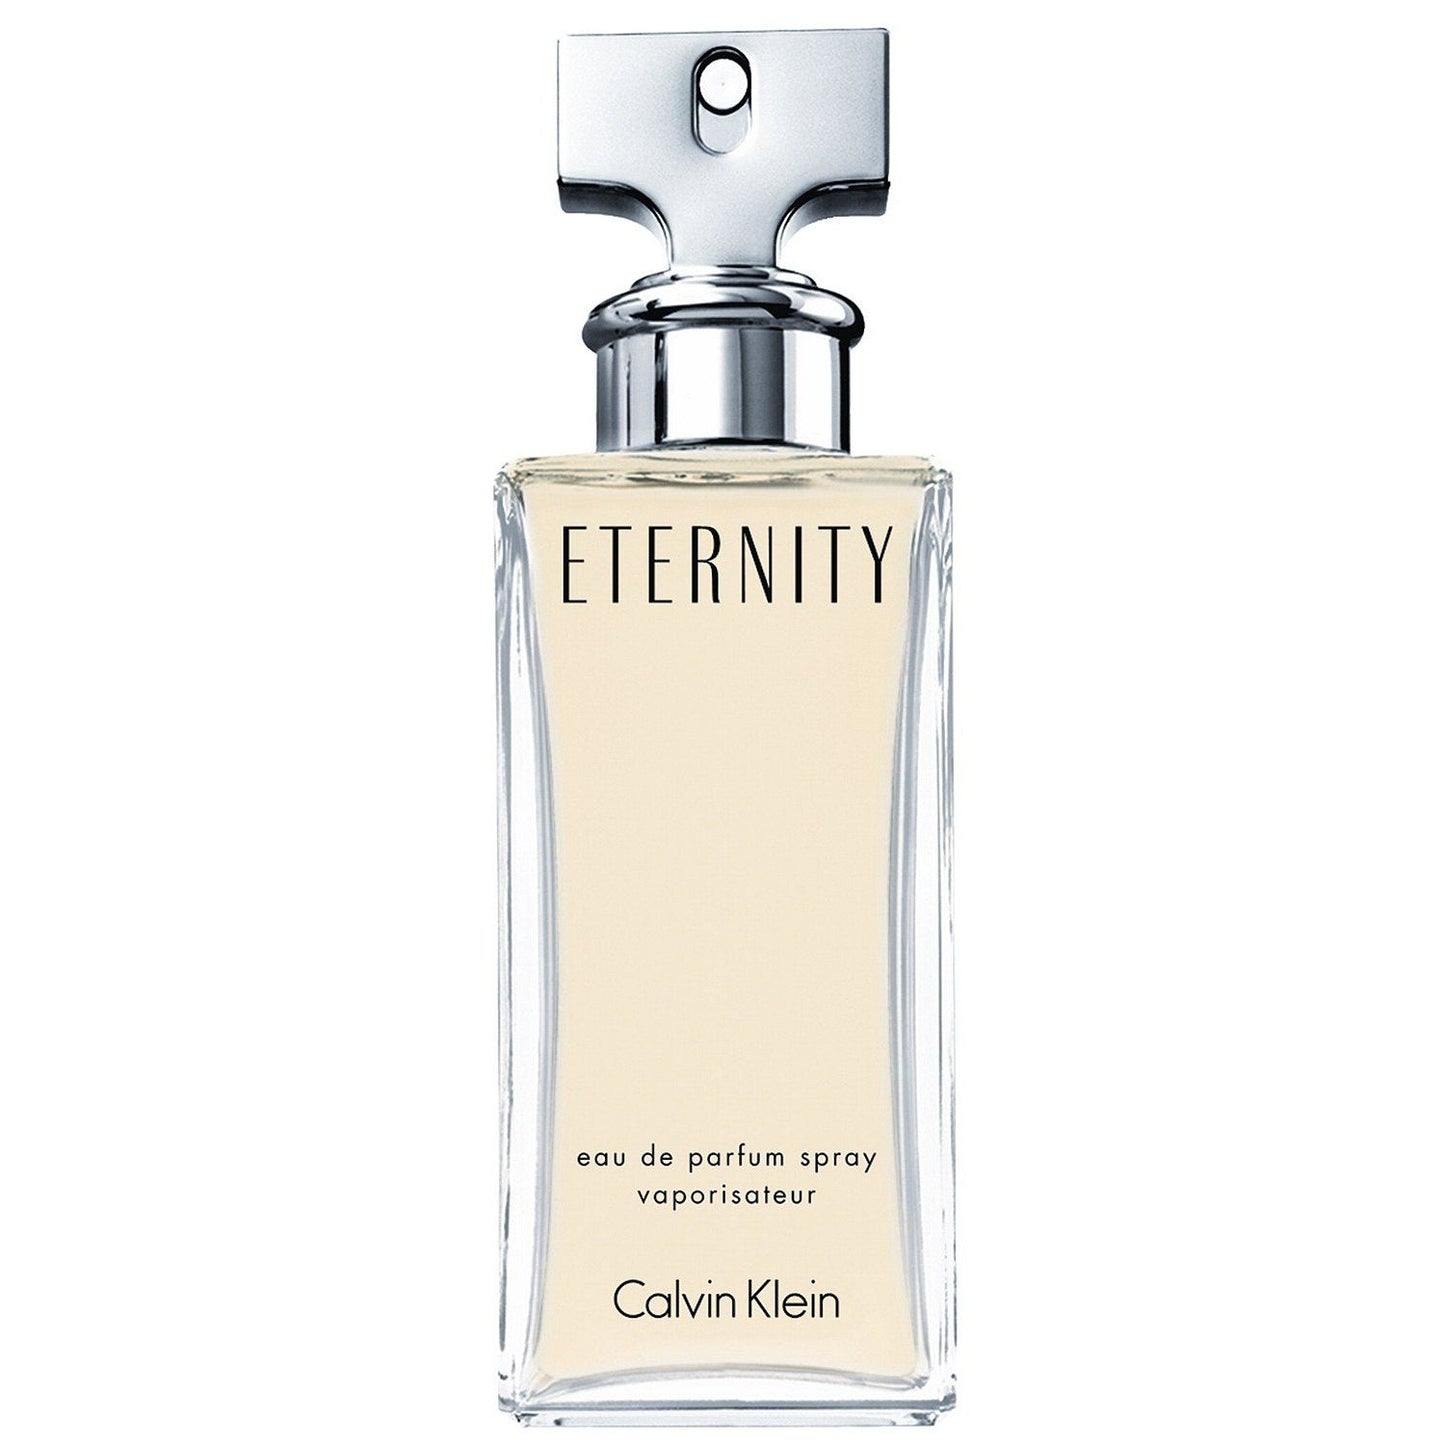 CALVIN KLEIN - Eternity For Her Eau de Parfum, 3.4 oz